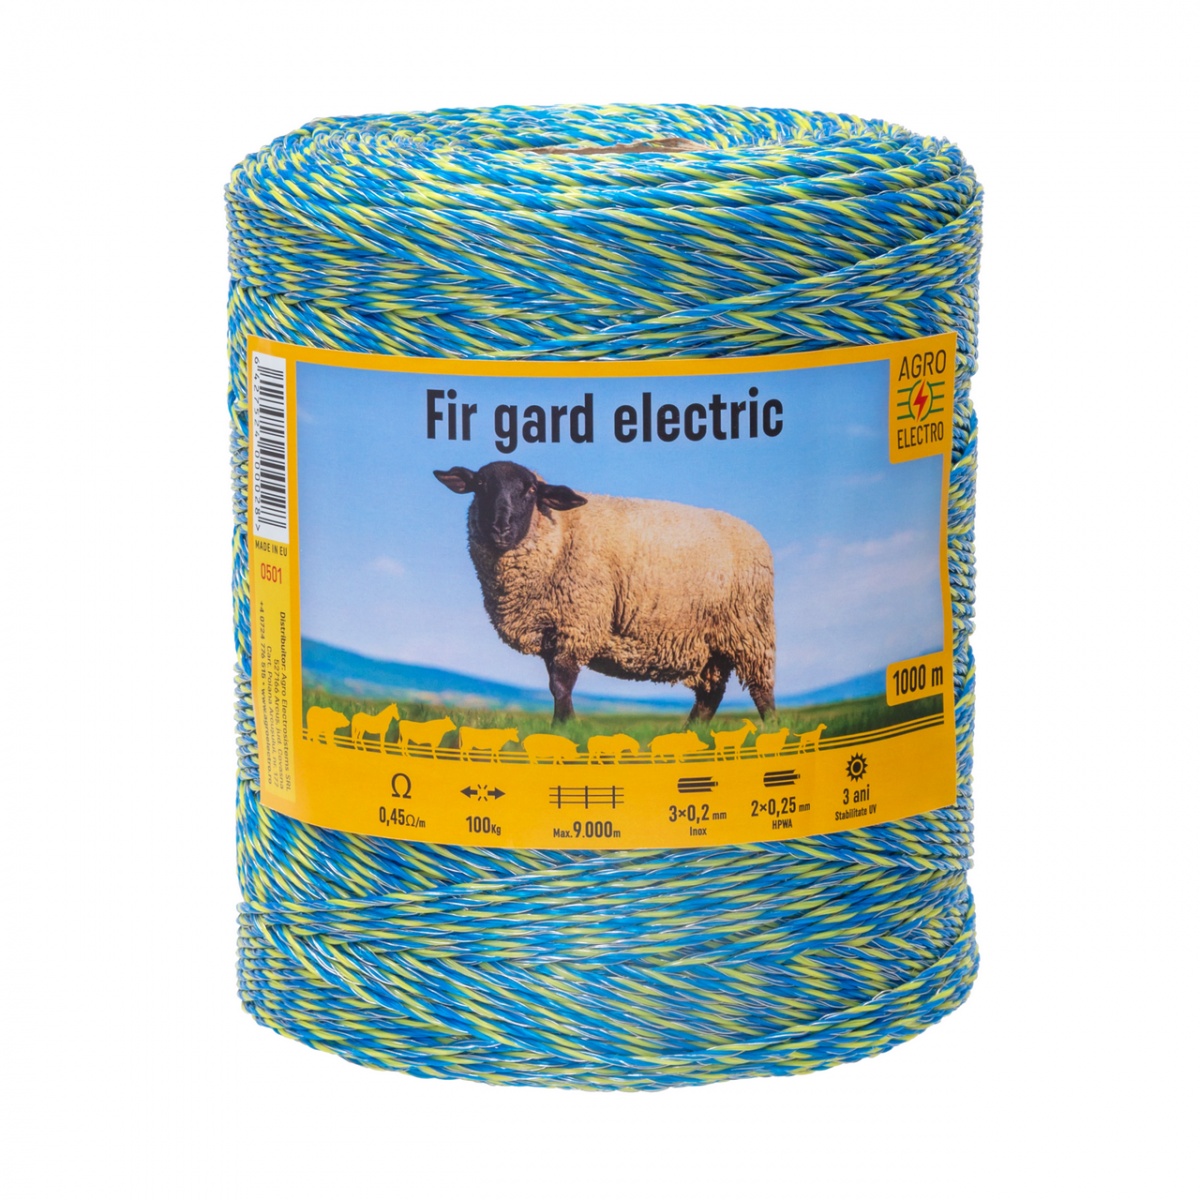 Fir gard electric - 1000 m - 100 kg - 0,45 Ω/m